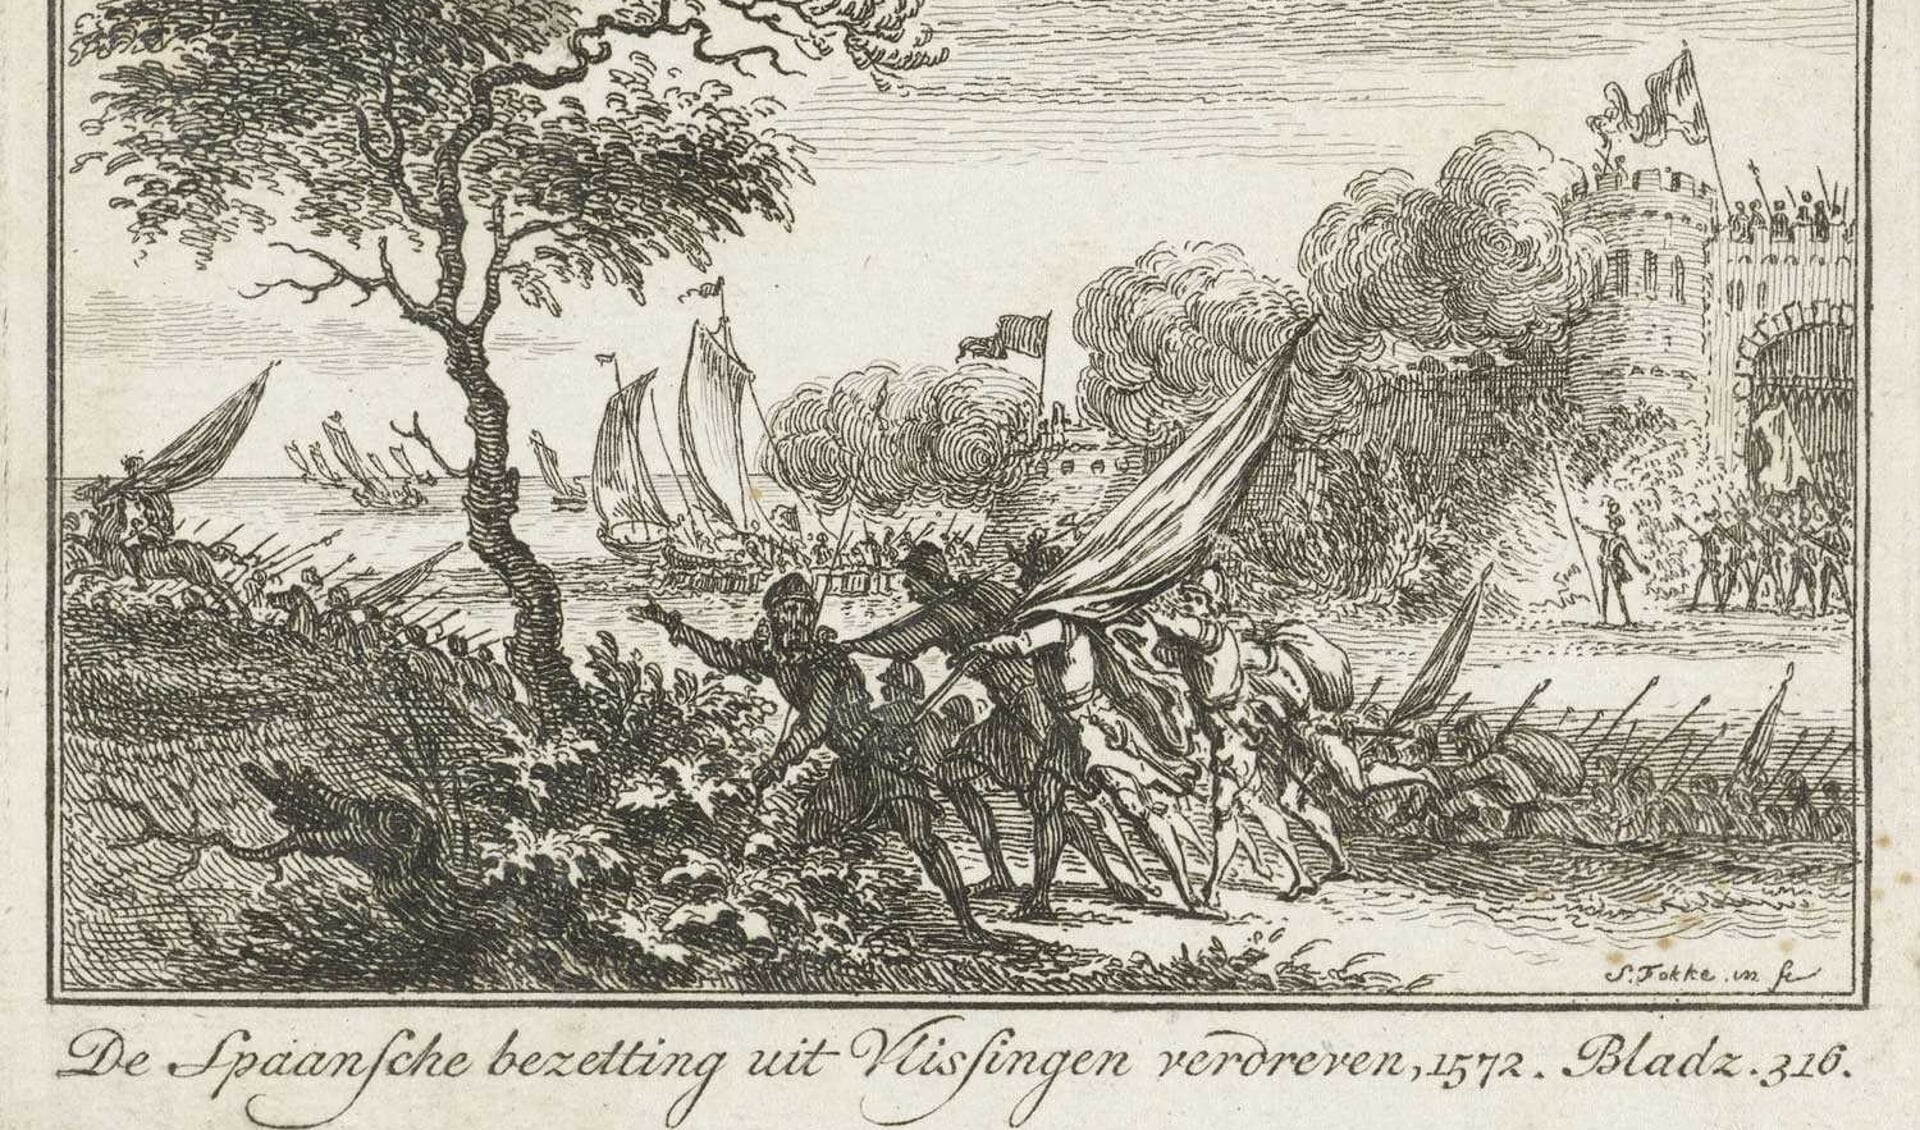 Ets van Simon Fokke uit 1784. Tekst: ‘De Spaansche bezetting uit Vlissingen verdreven, 1572’.